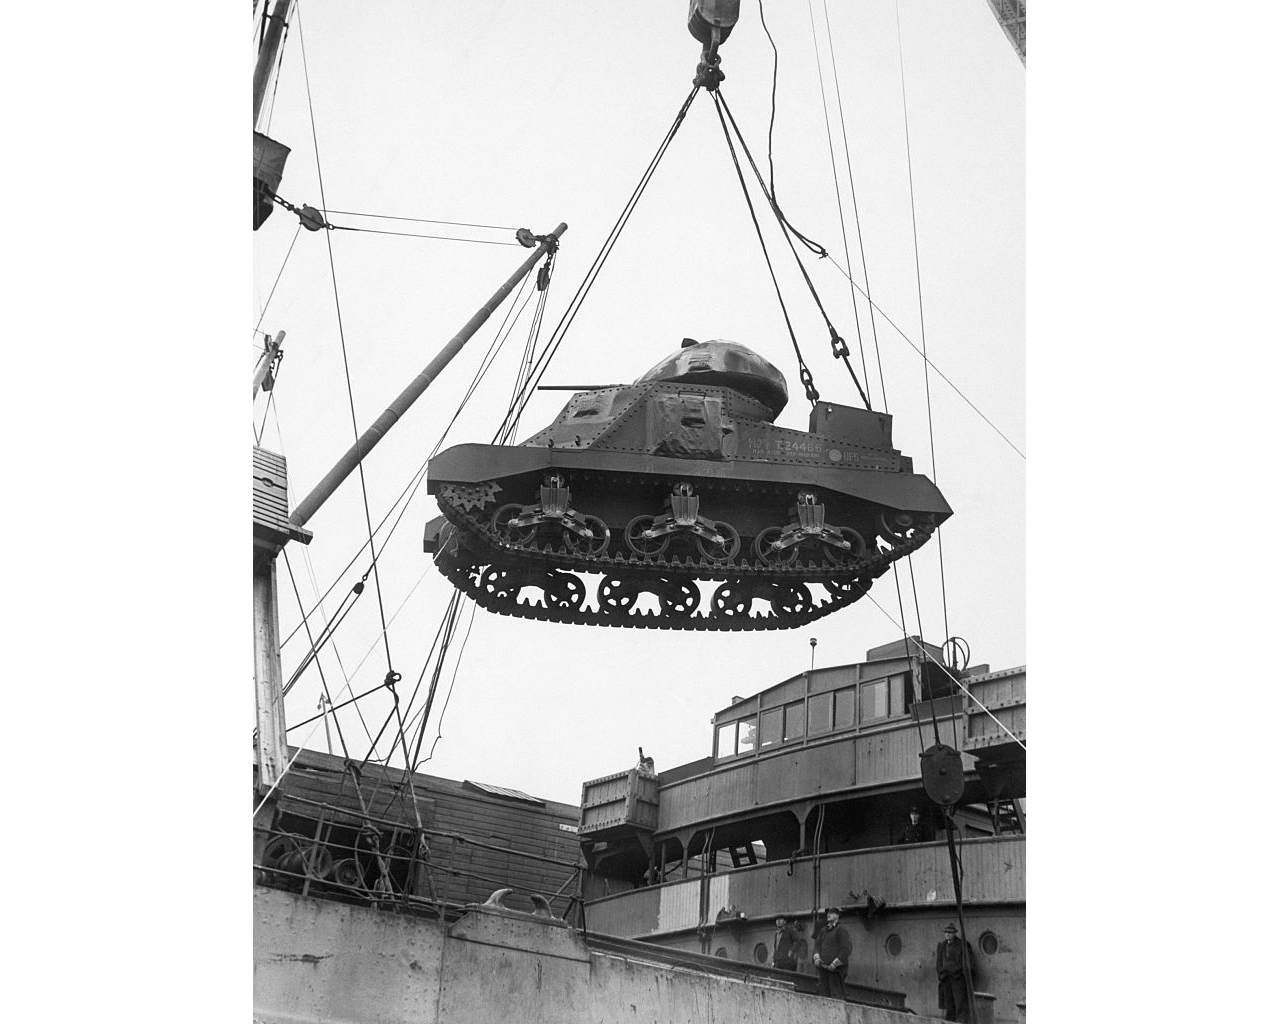 Танк по ленд-лизу переносят через борт грузового судна в порту Атлантического побережья США. Фотография времён Второй мировой войны. Фото © Getty Images / Bettmann